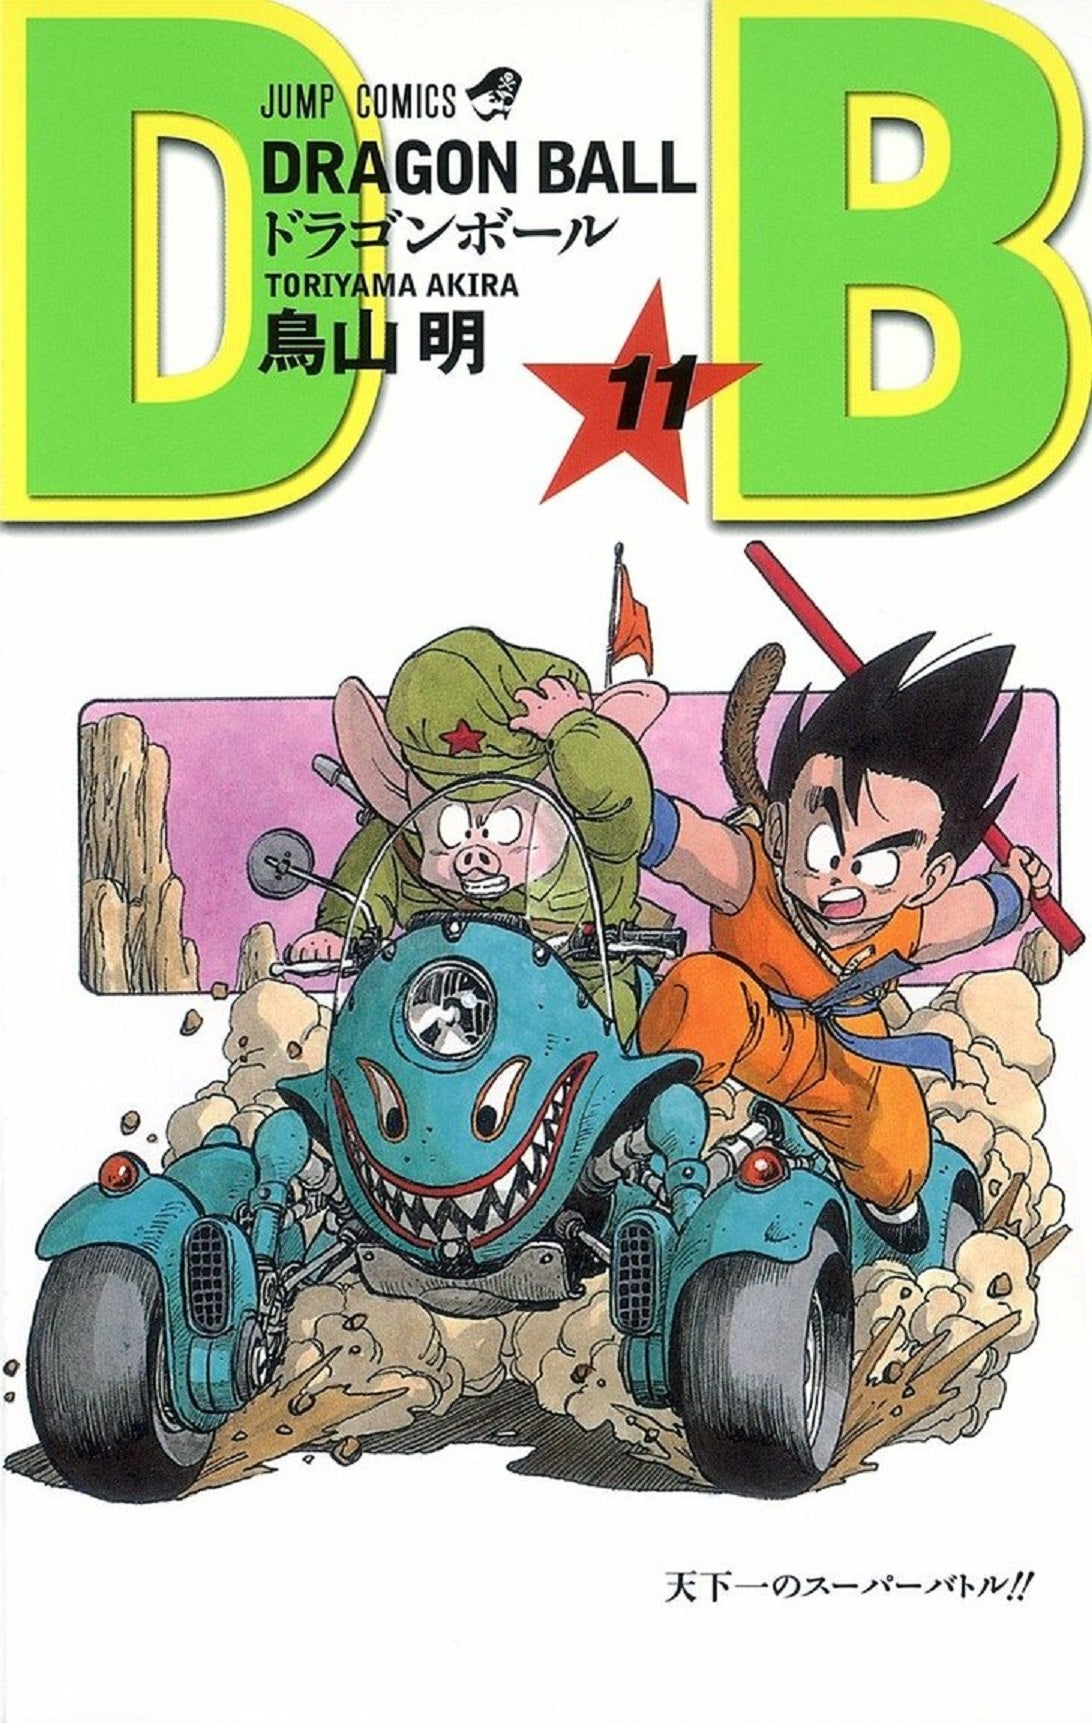 Desenhista do mangá de Dragon Ball Super revela o design original do Super  Saiyajin Blue, e ele possui algumas diferenças do final - Critical Hits